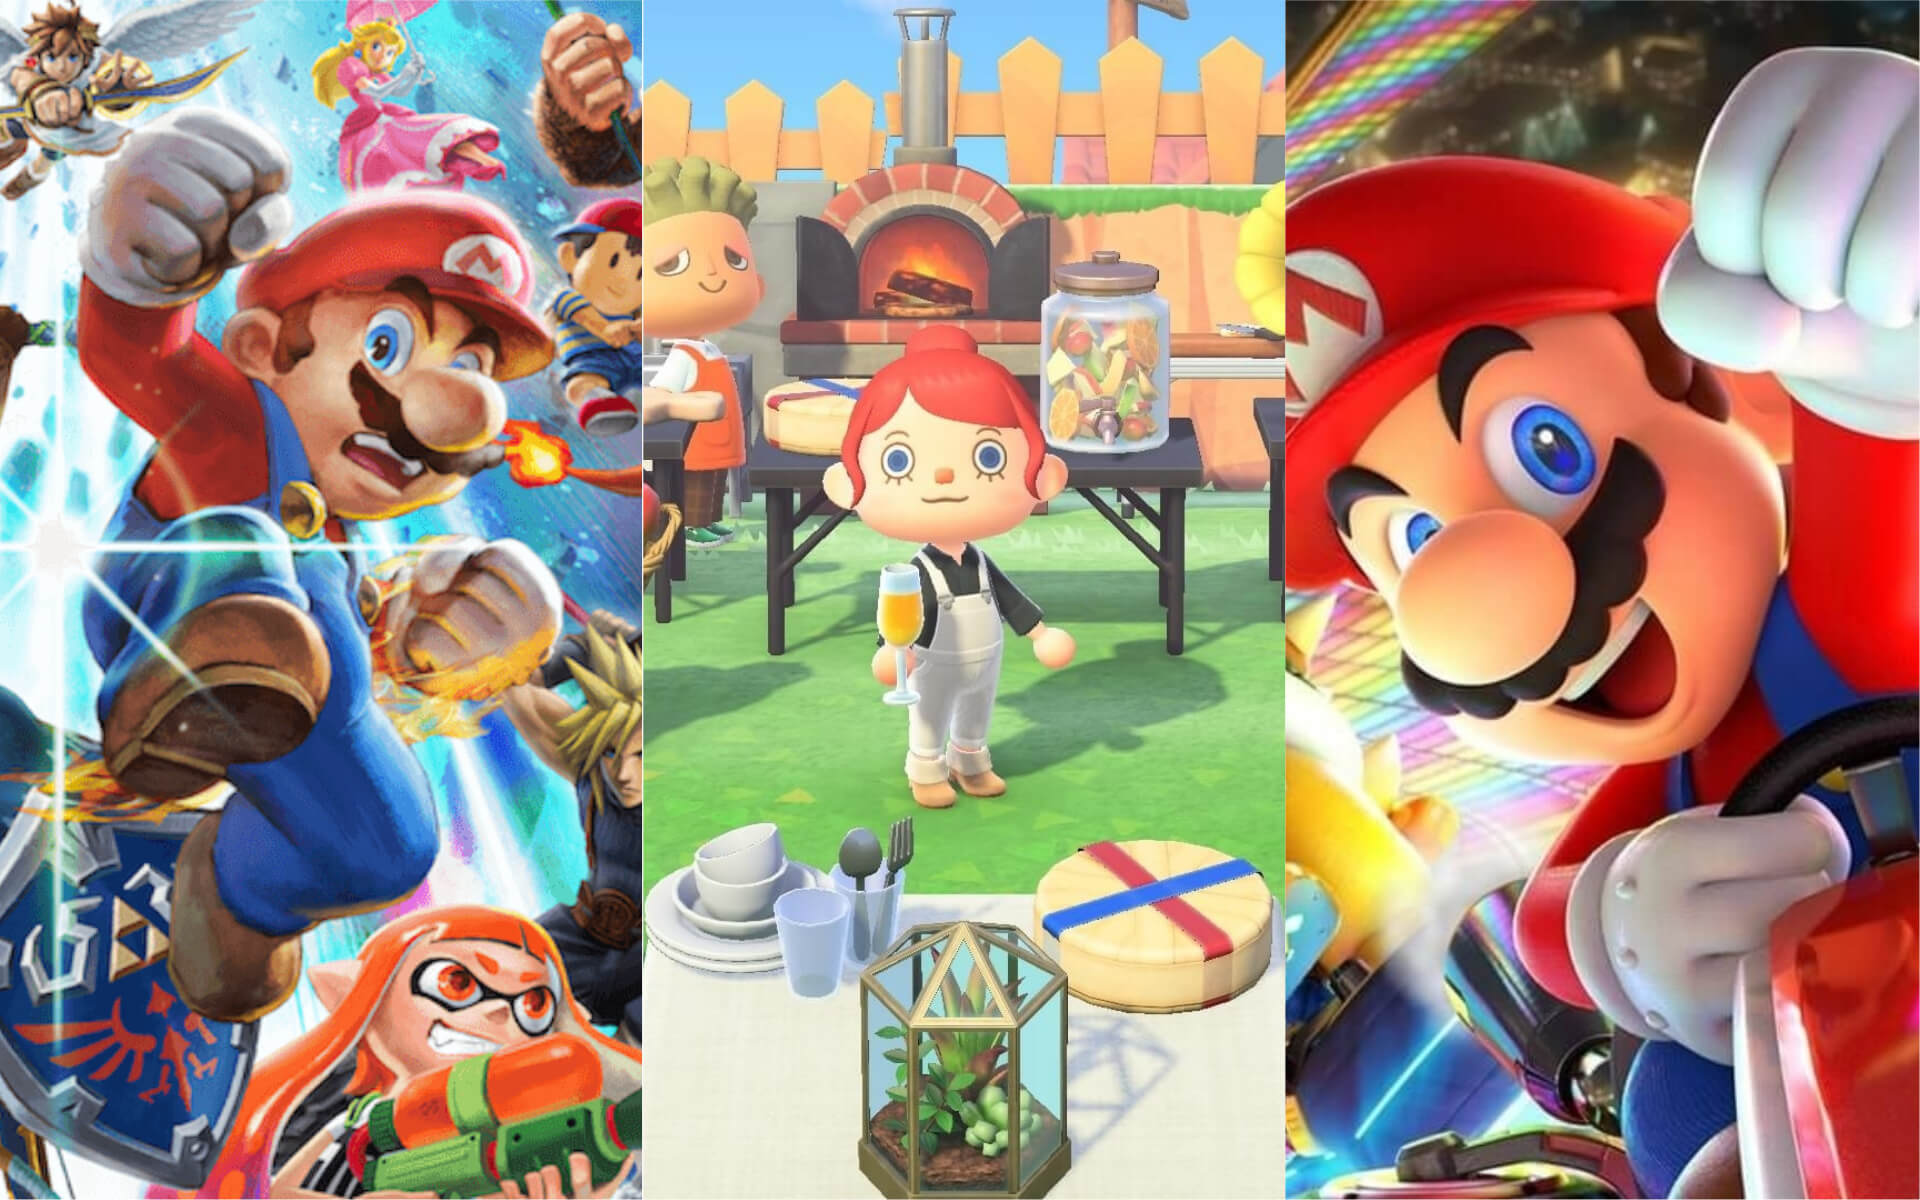 Mario-Kart-Smash-Bros-Animal-Crossing-Switch-Games (1)